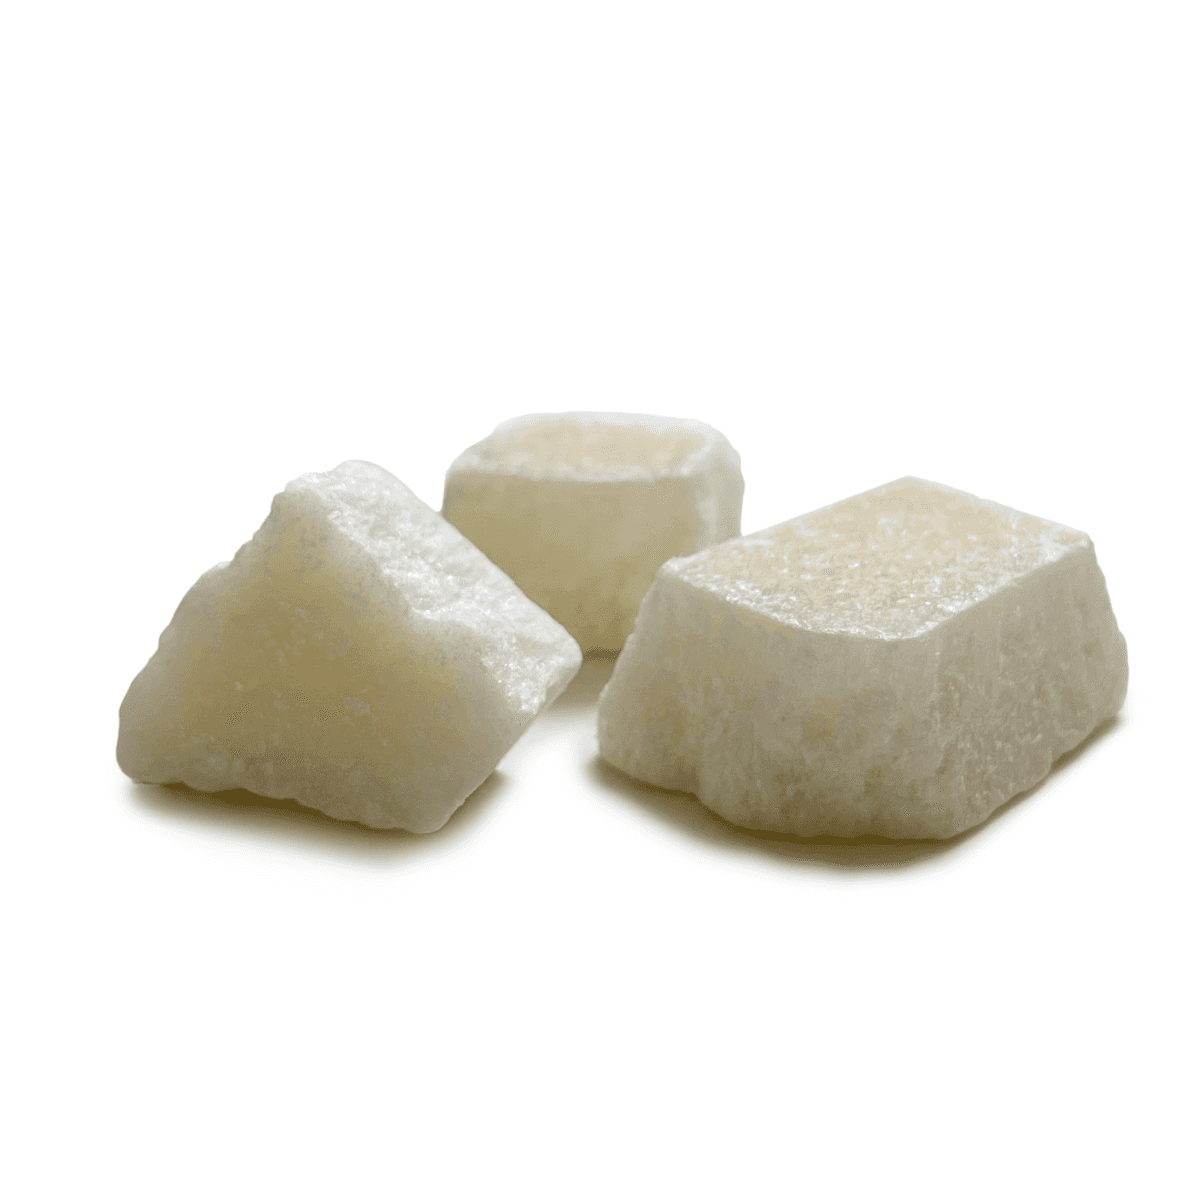 Immagine del prodotto Profumo Solido per Ambiente Fir Balsam Confezione da 3 Cristalli | Pietro Zanetti Home